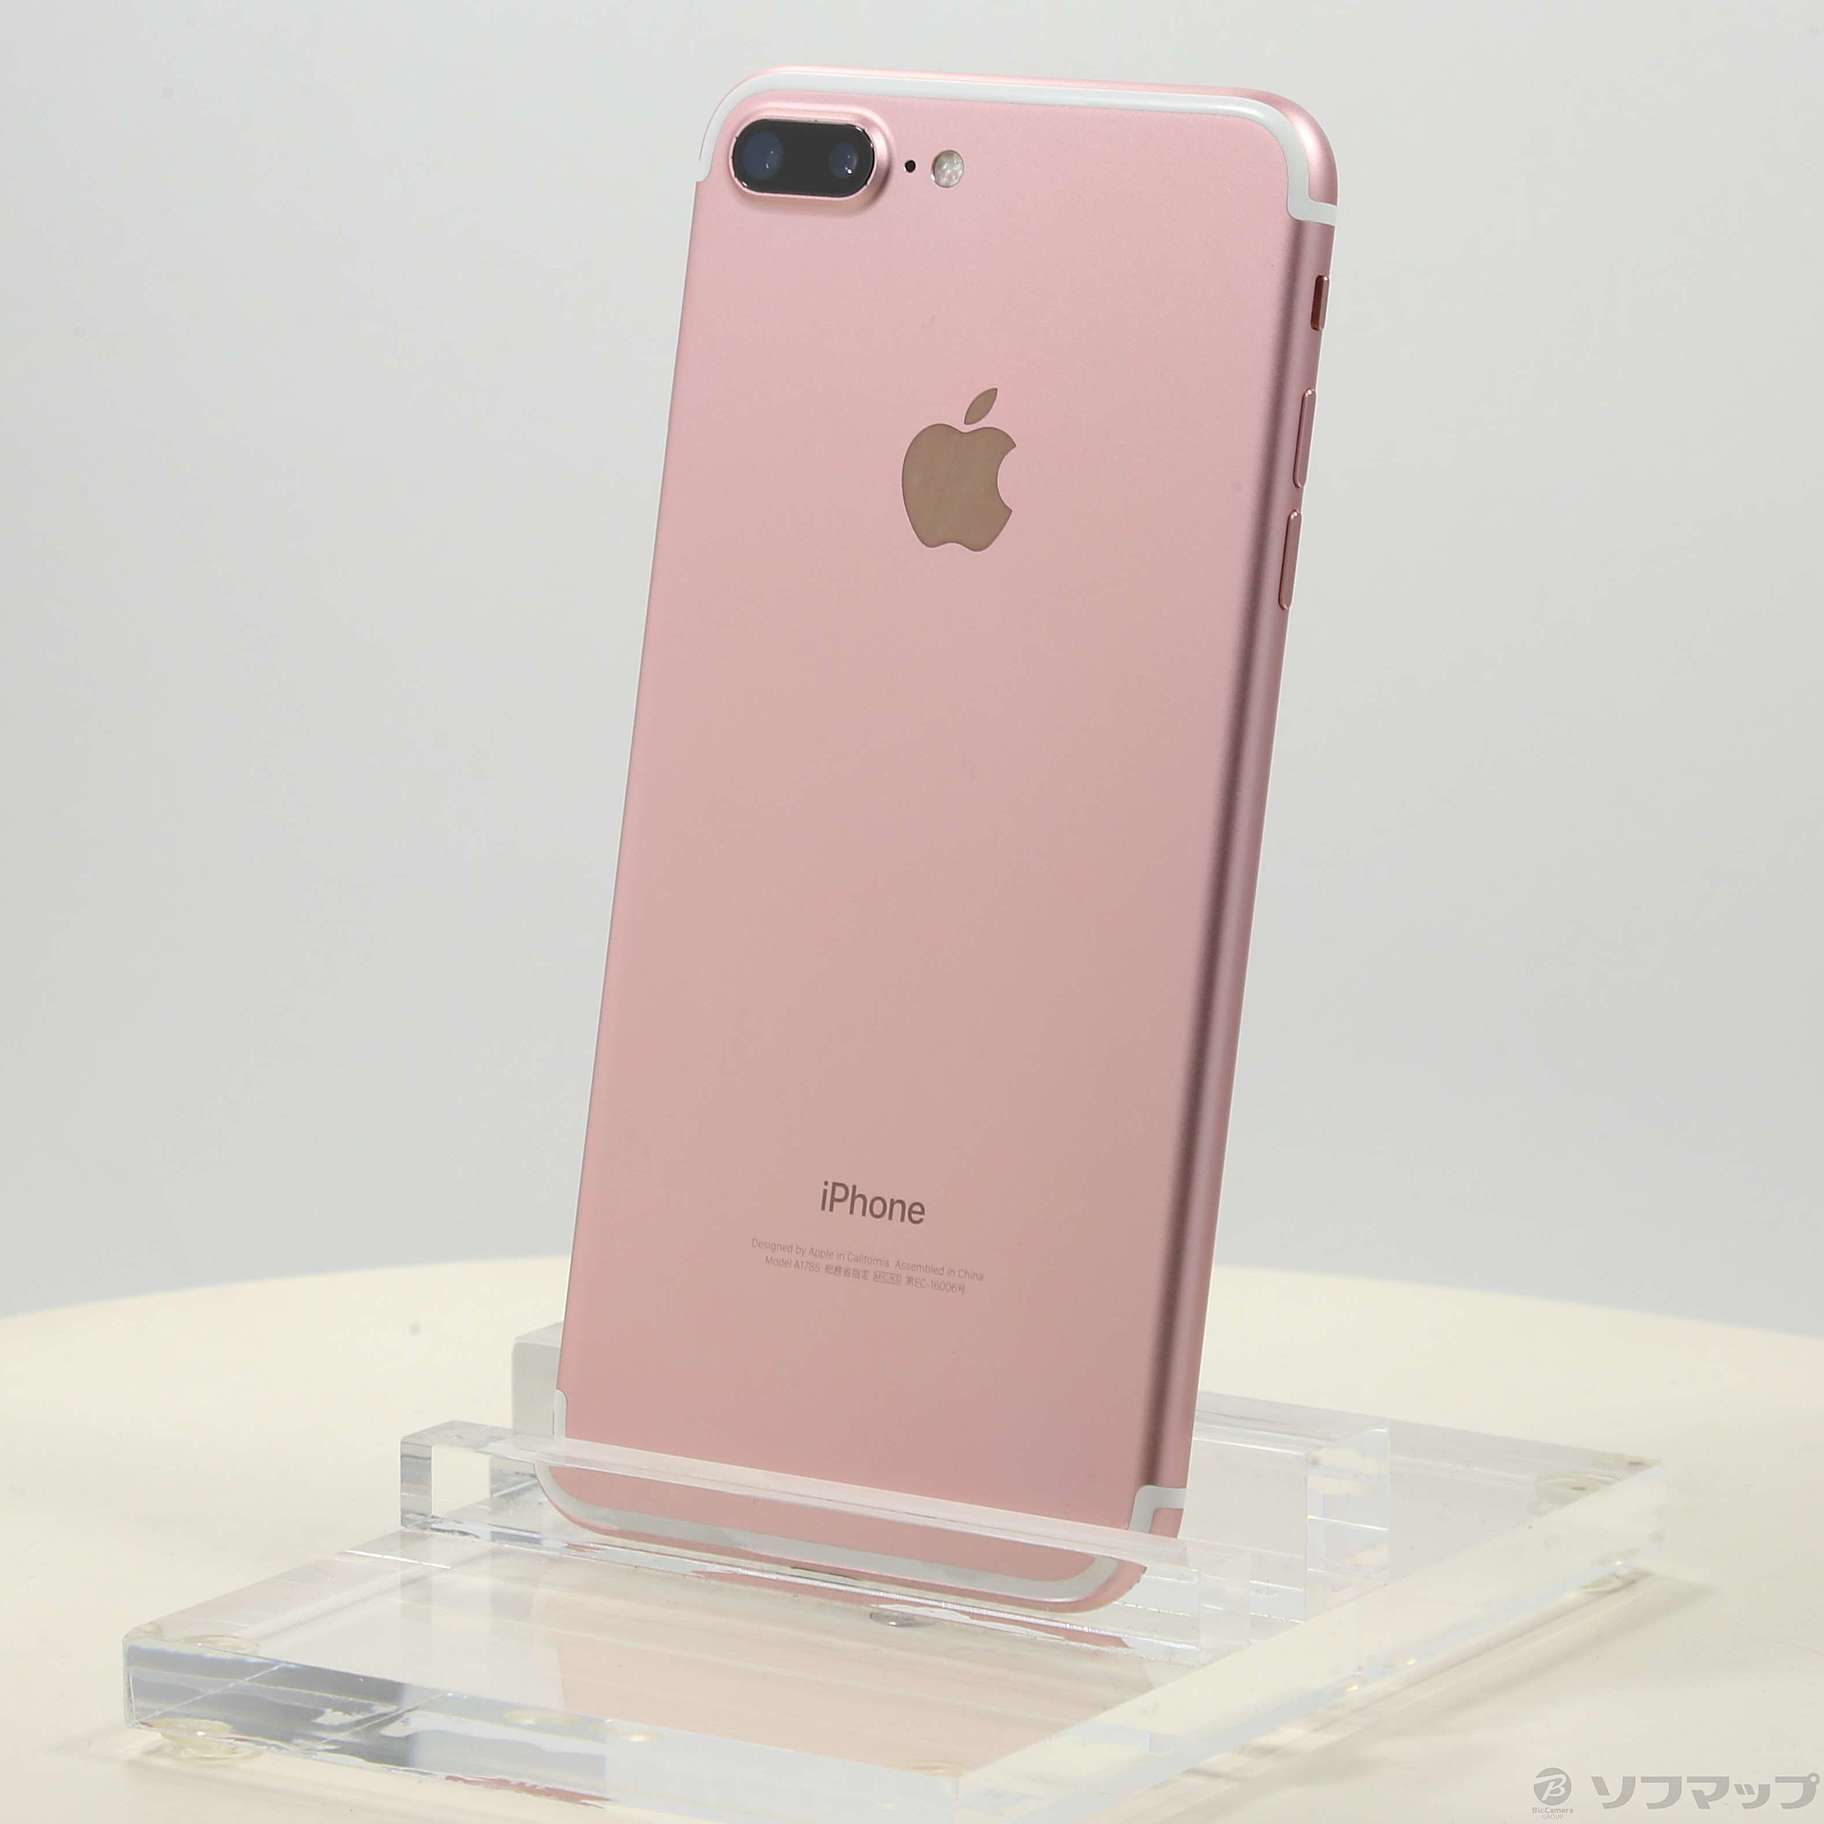 ☆ iPhone 7 Rose Gold 128 GB Softbank ☆ www.krzysztofbialy.com